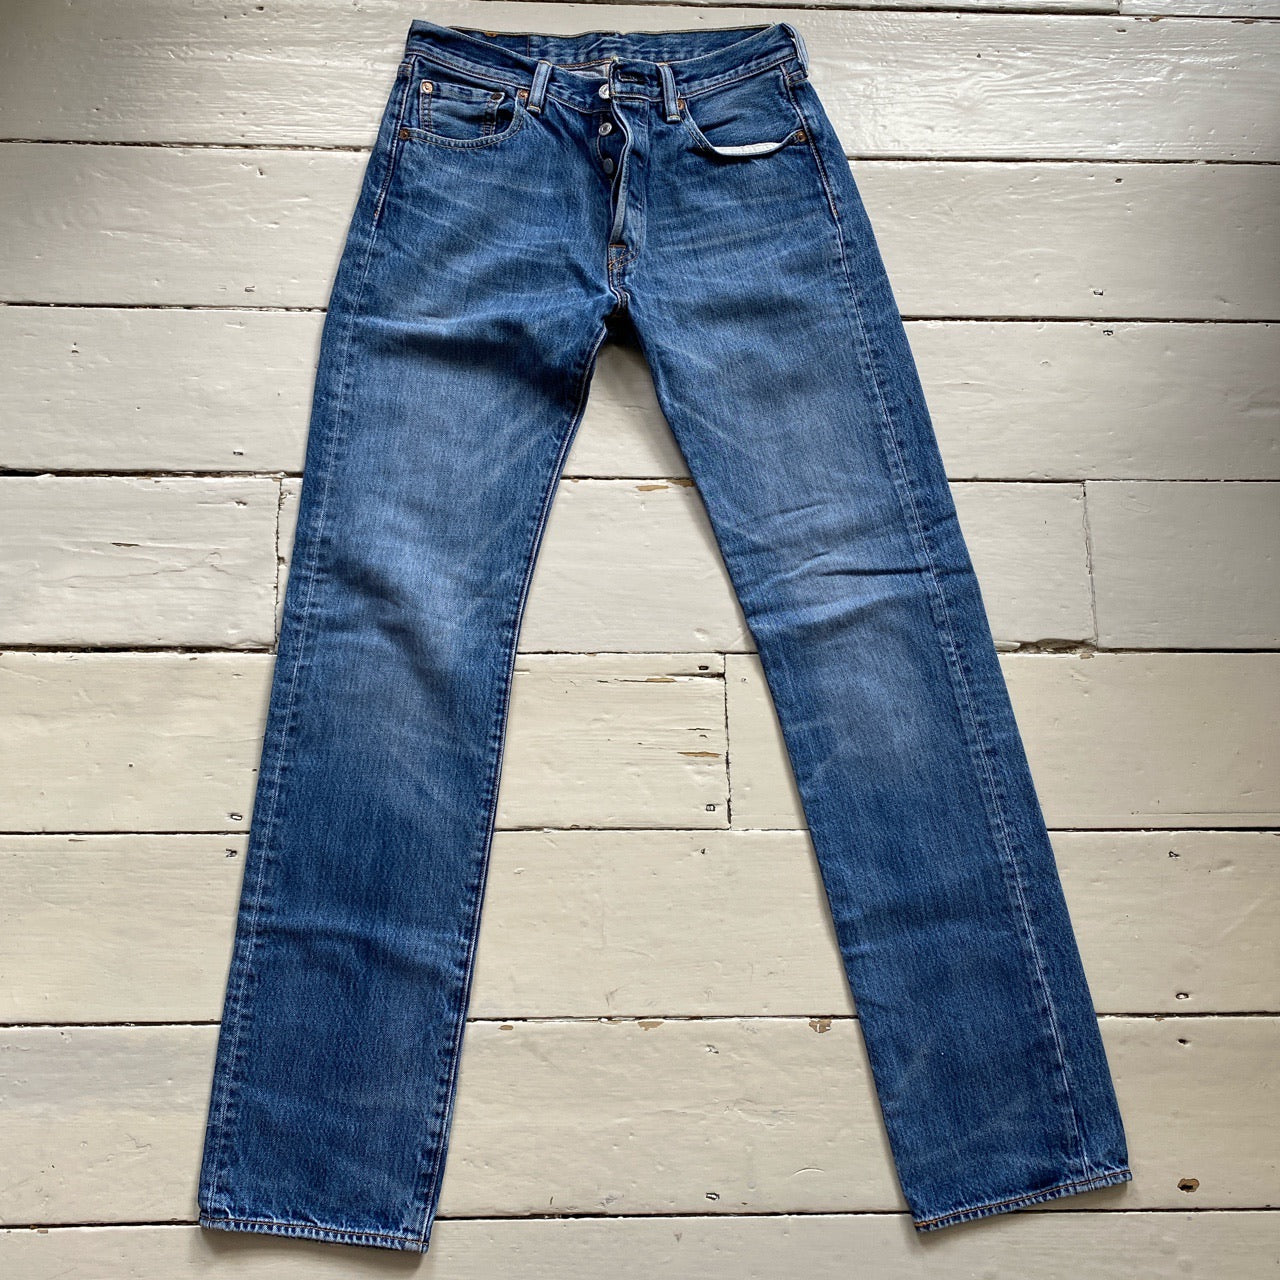 Levis 501 Light Jeans (30/34)